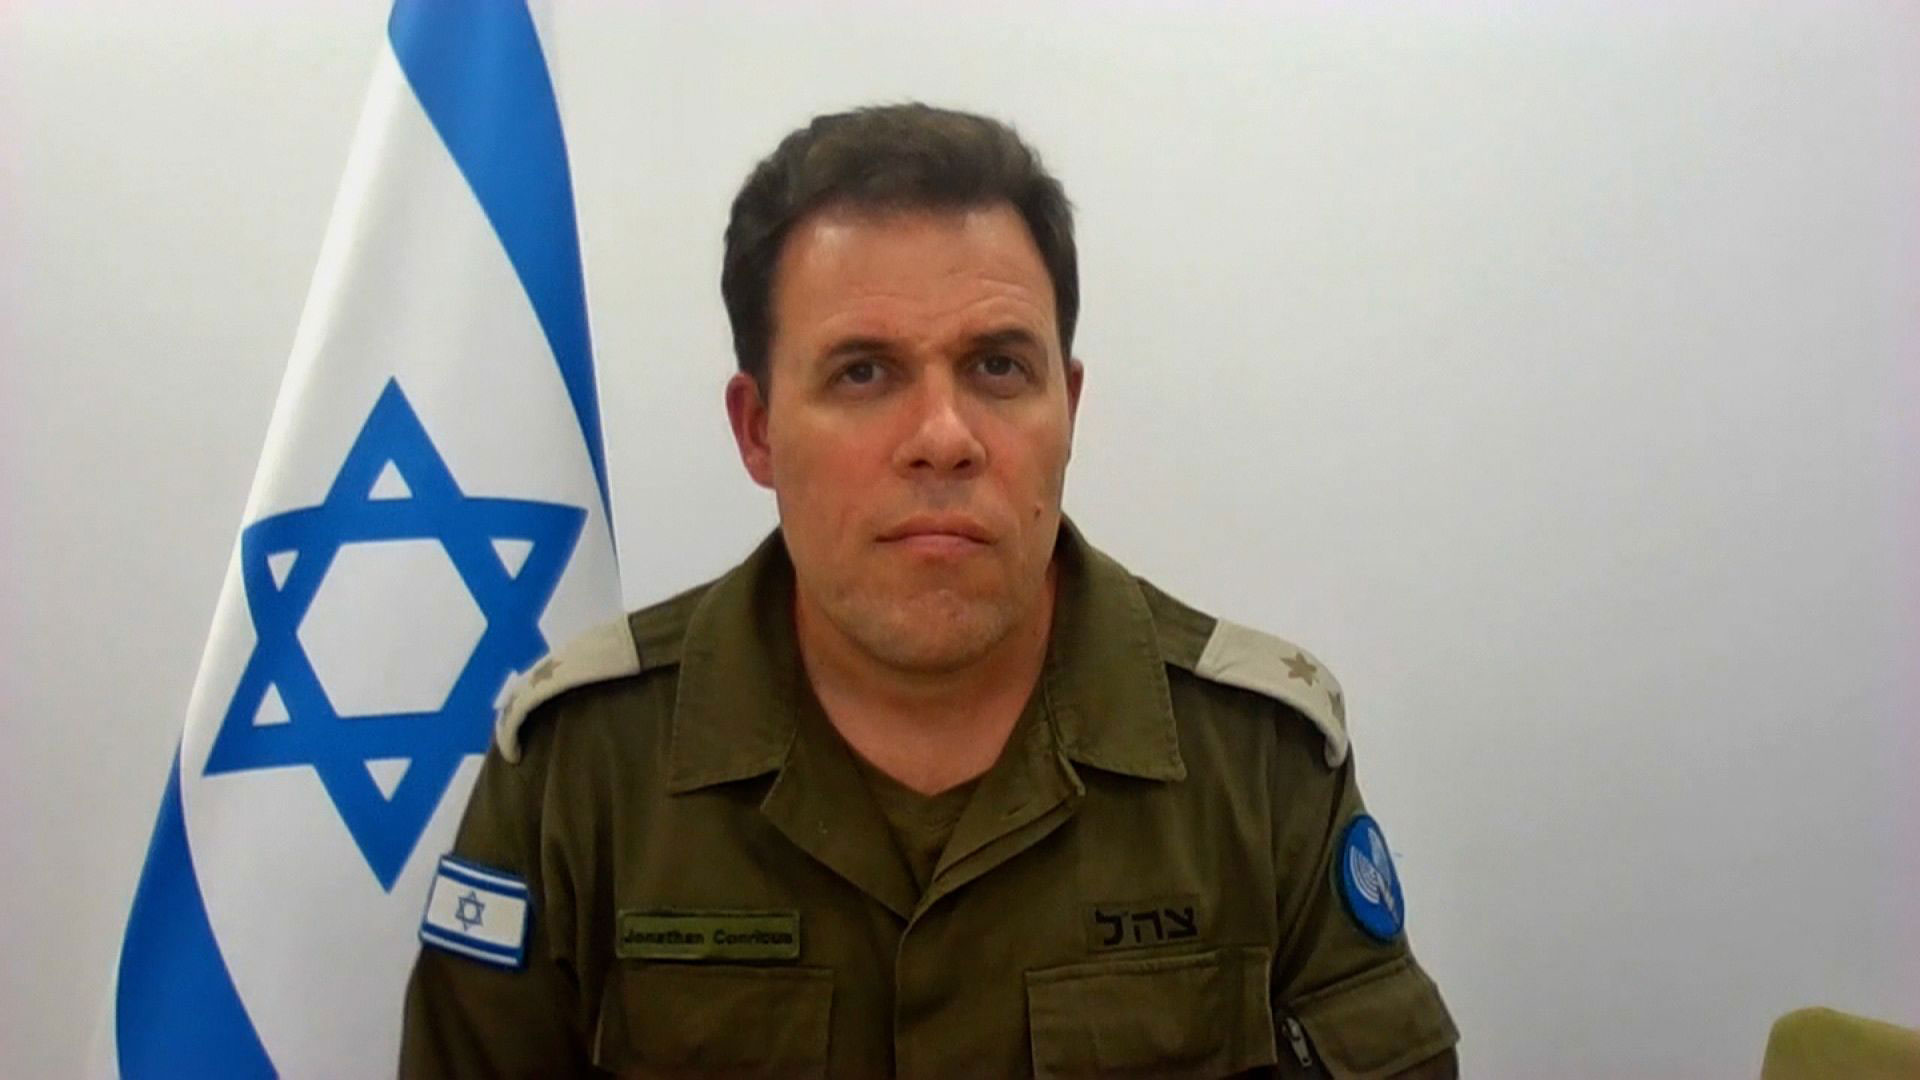 Αντισυνταγματάρχης Τζόναθαν Κονρίκους, εκπρόσωπος των IDF: Οι σχέσεις μας με τον Ερντογάν μπορεί να επιδεινωθούν